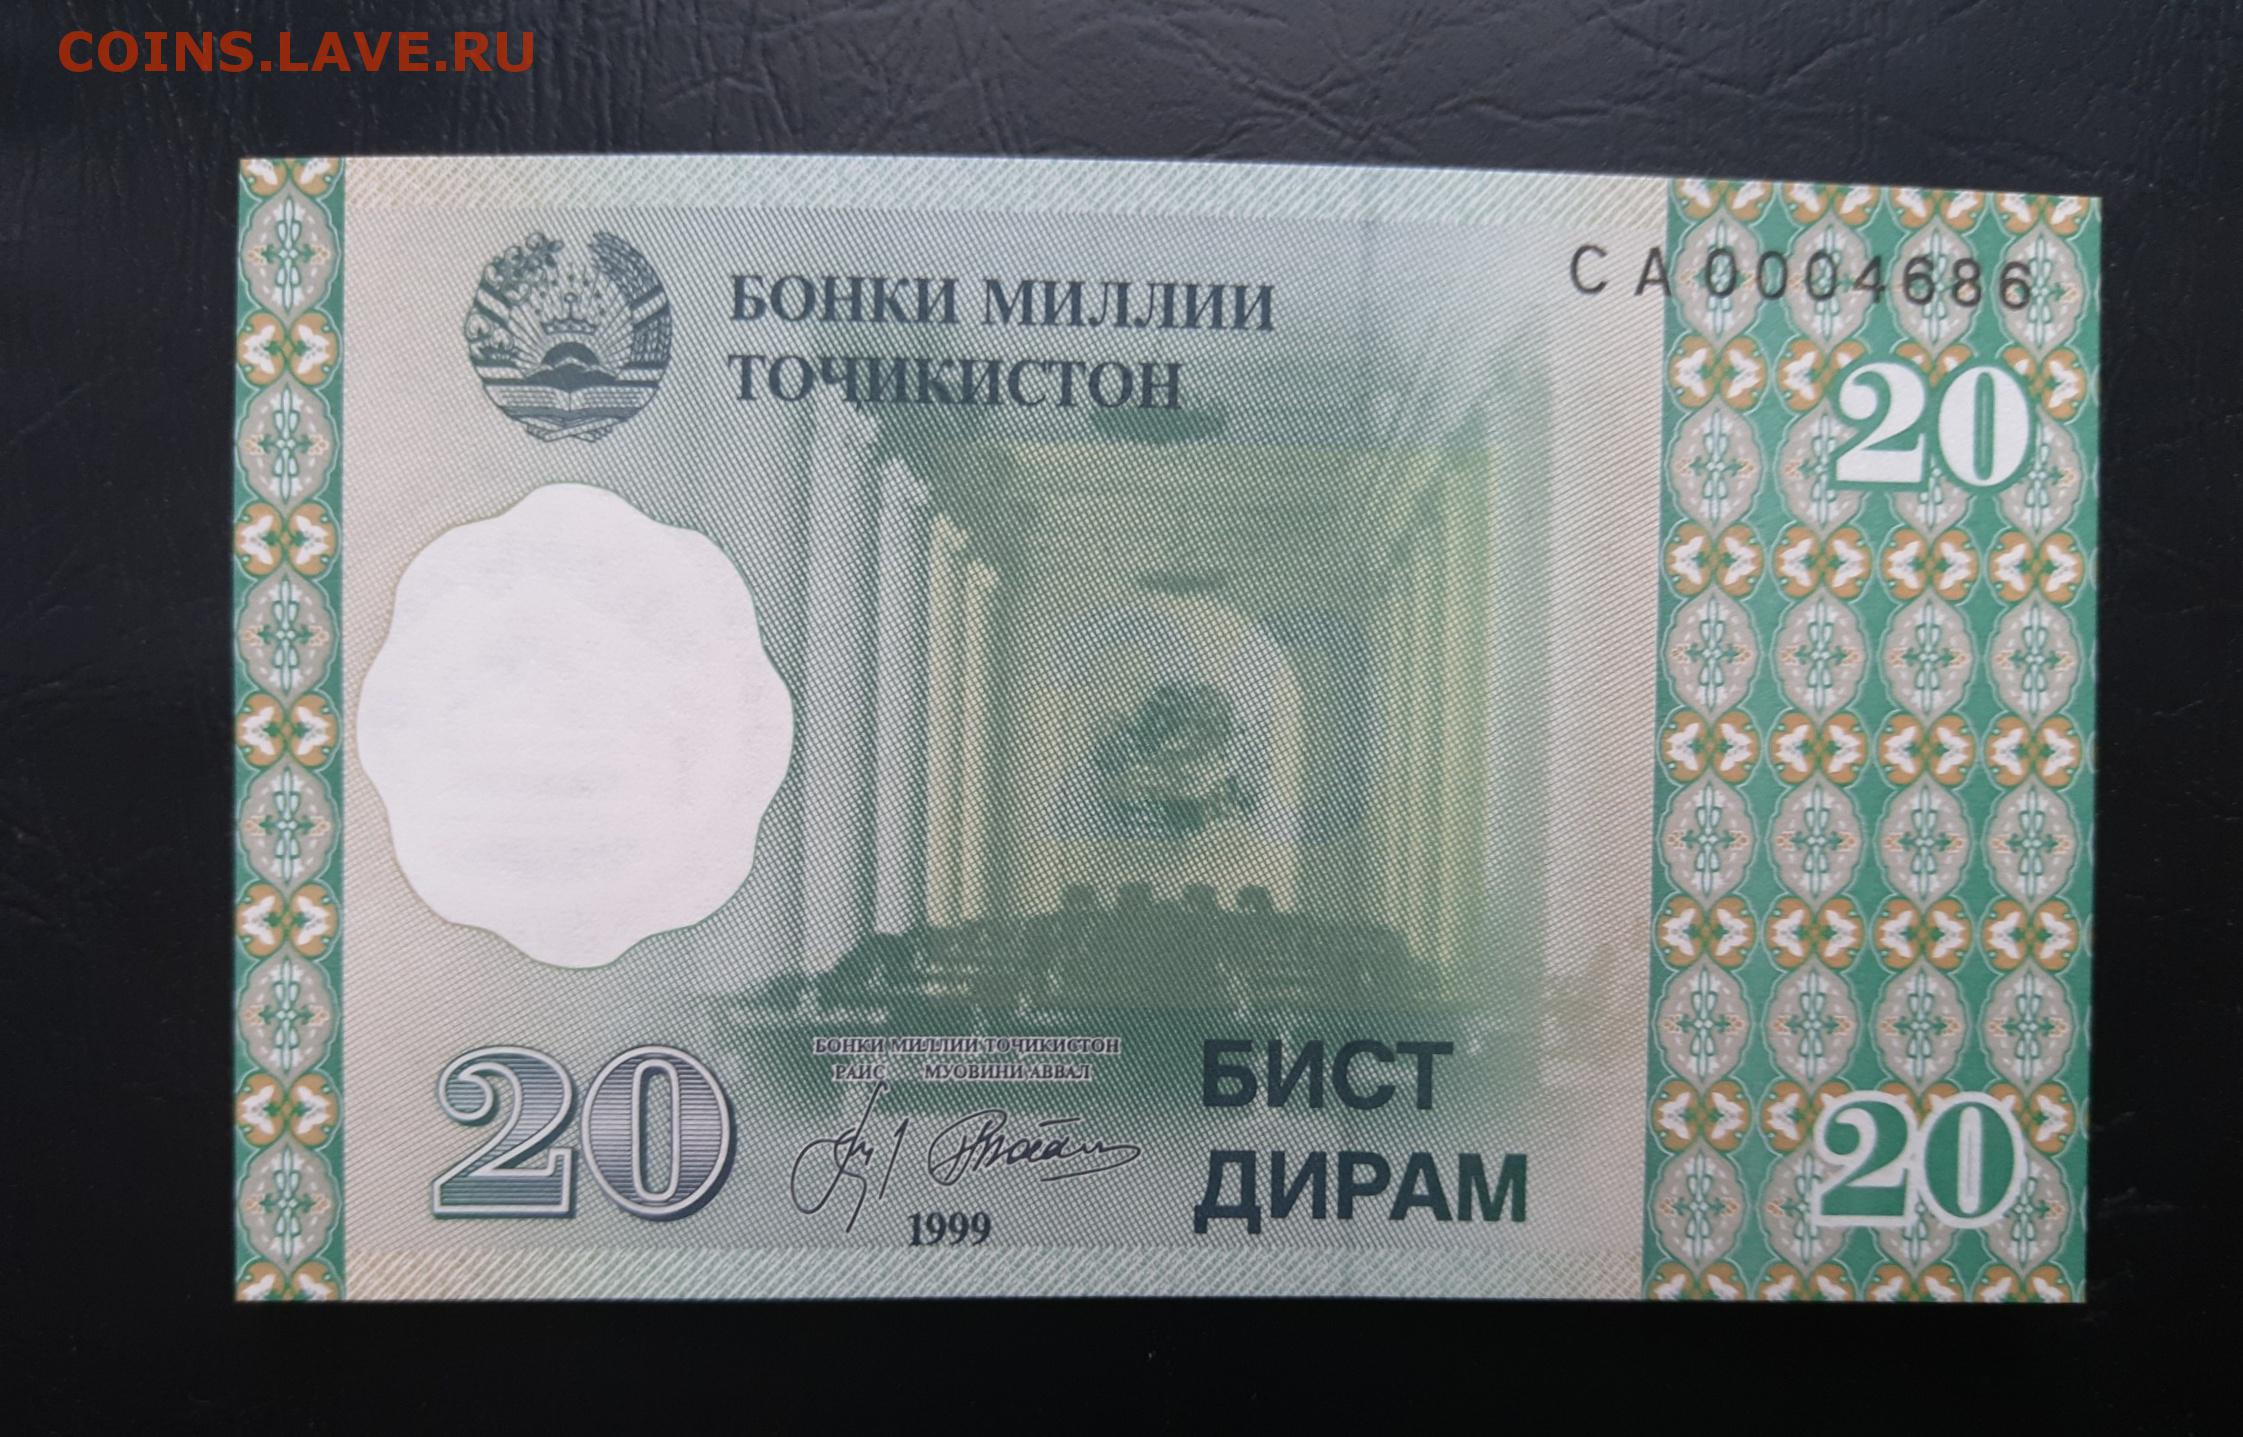 Сум таджикистан. Купюра Таджикистана 20. 20 Дирам Таджикистан. 20 Дирам Таджикистан банкнота. Таджикские бумажные деньги.